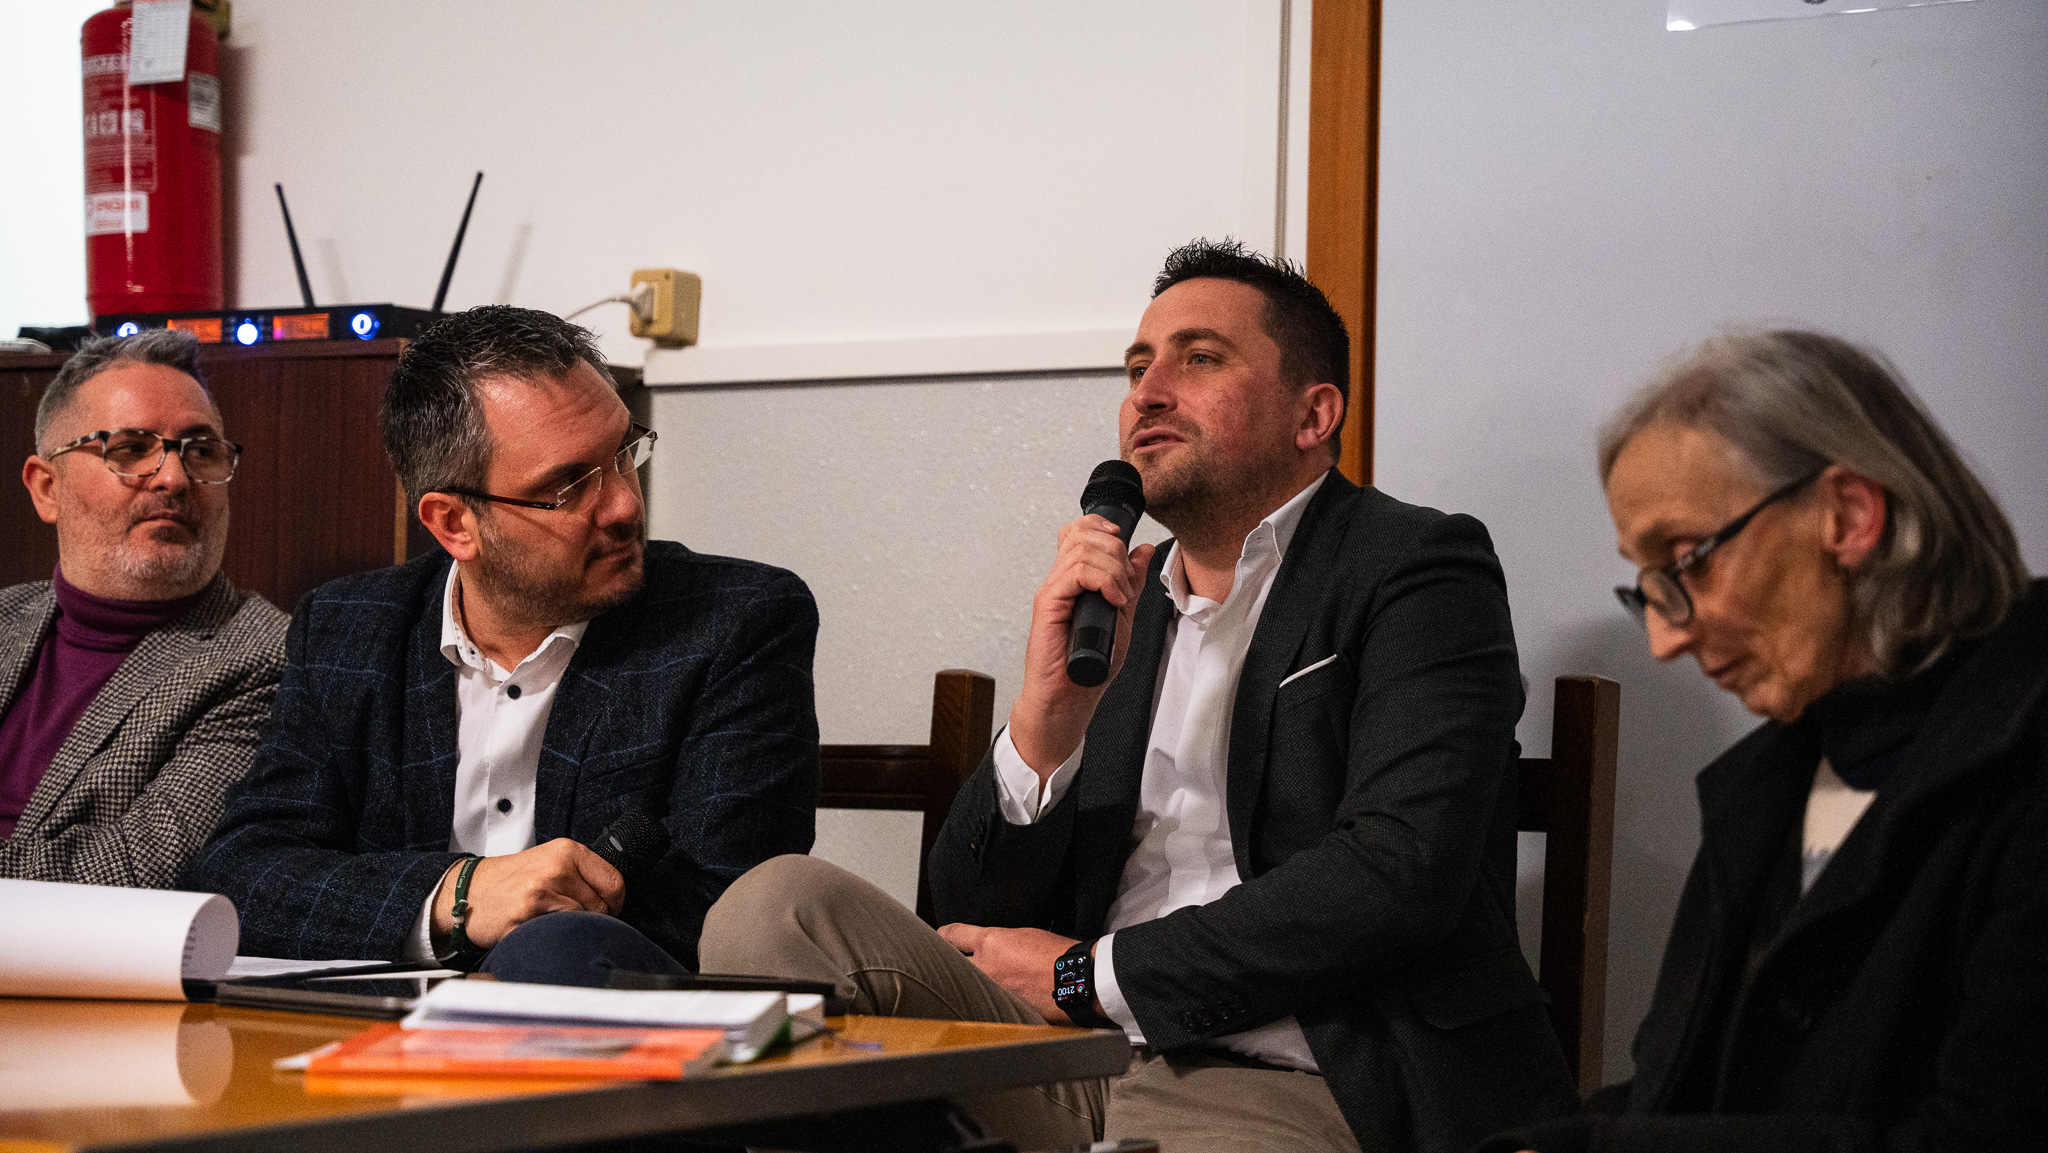 Successo di pubblico per il convegno Generazione Connessa in provincia di Udine 1